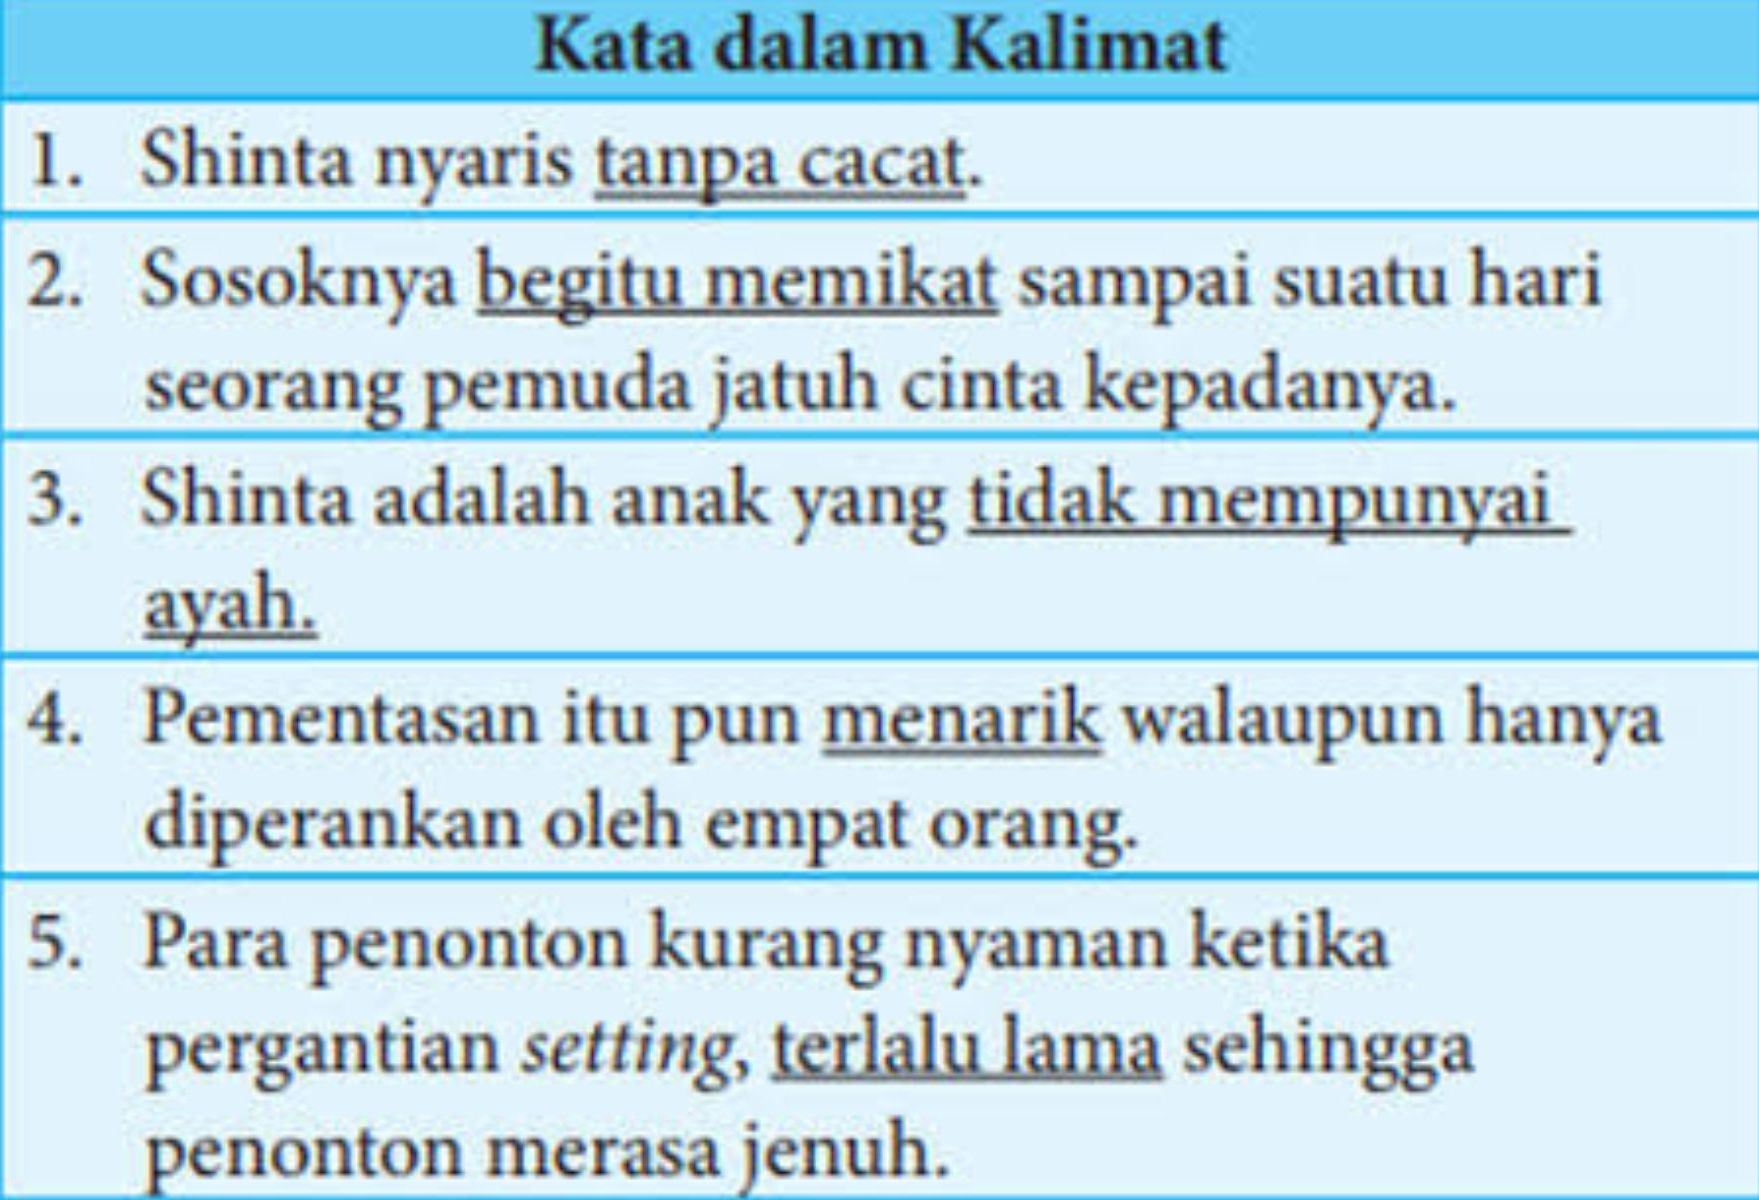 Soal dan kunci jawaban Bahasa Indonesia kelas 8 SMP halaman 164.